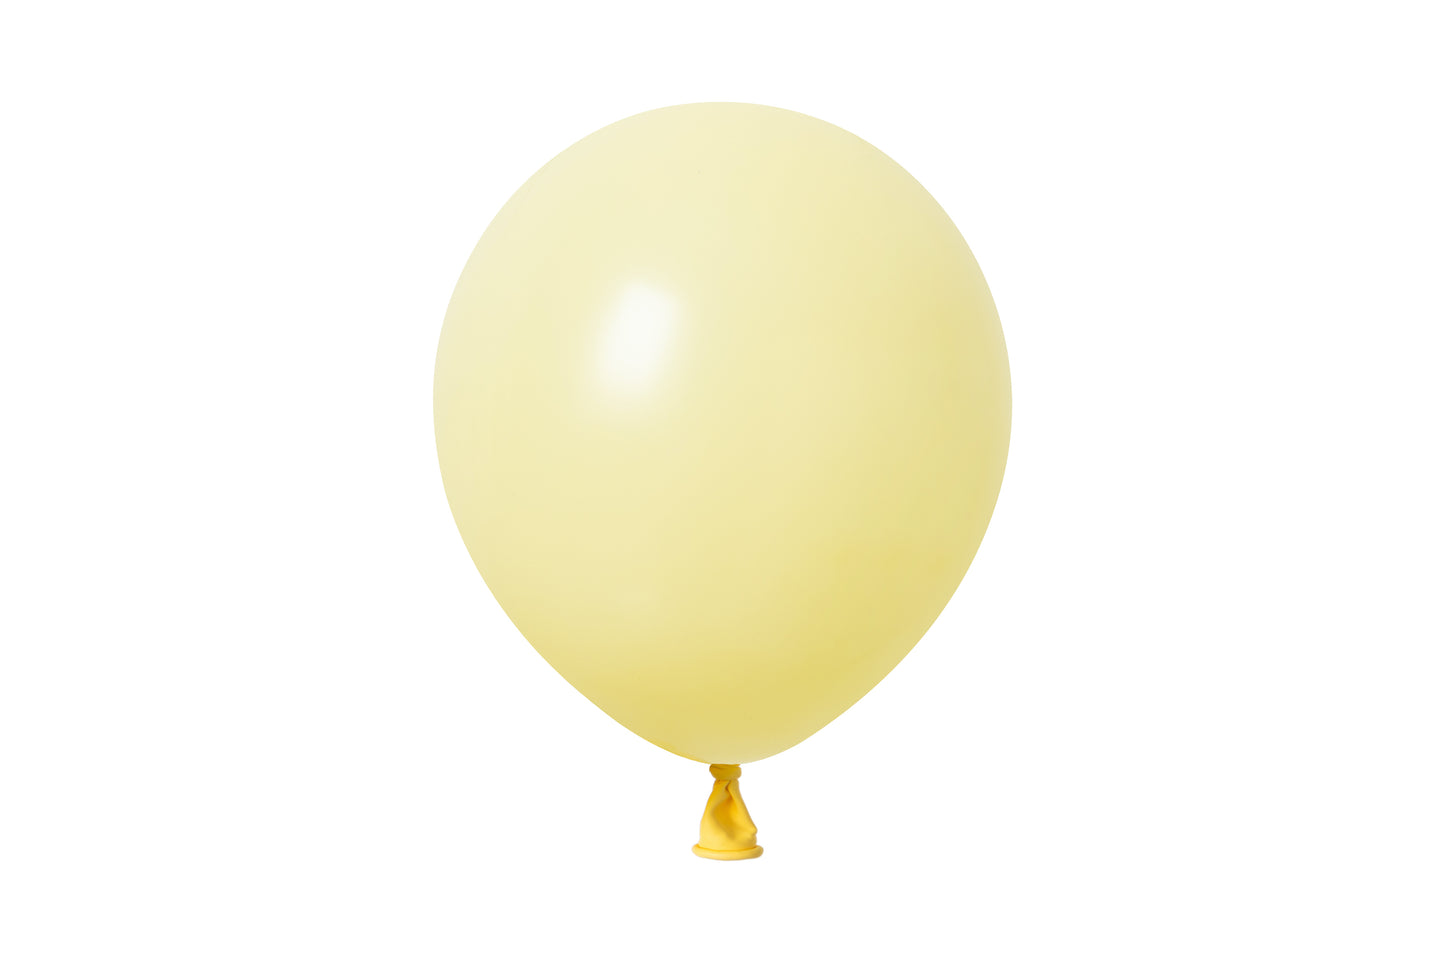 Winntex Premium 18" Light Yellow Latex Balloon 25ct